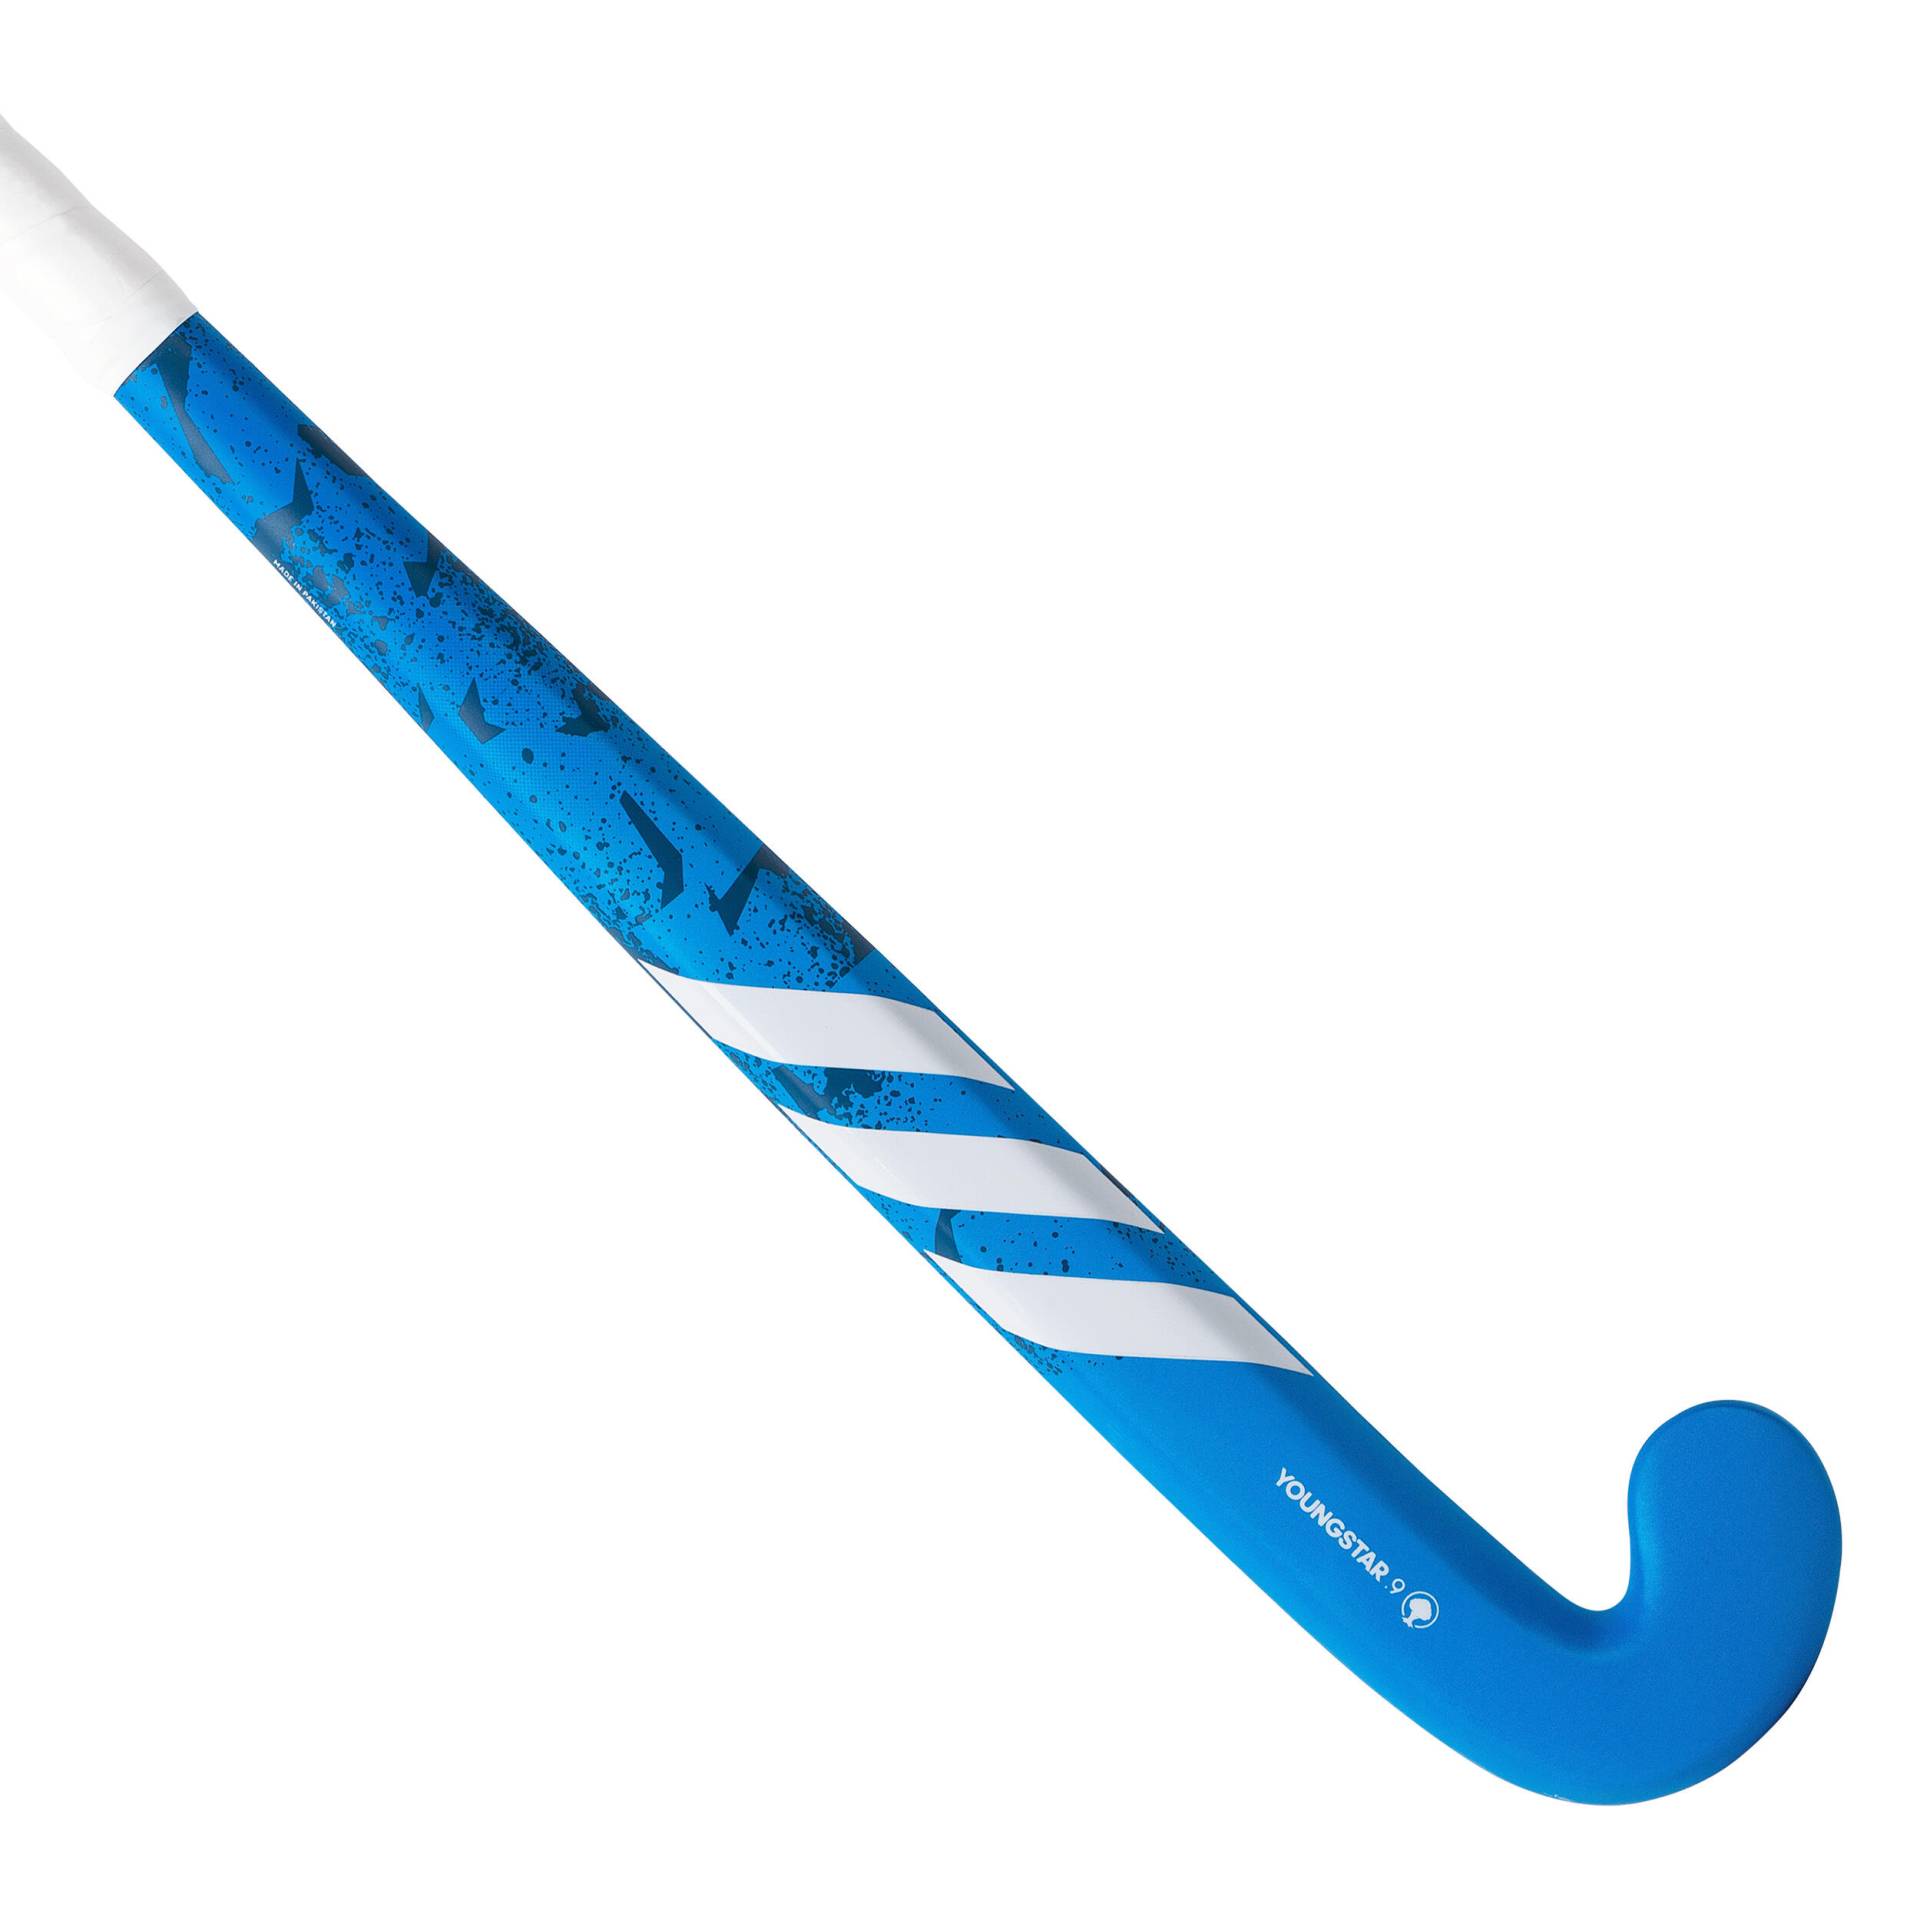 Feldhockeyschläger aus Holz Youngstar Kinder blau/weiss von Adidas